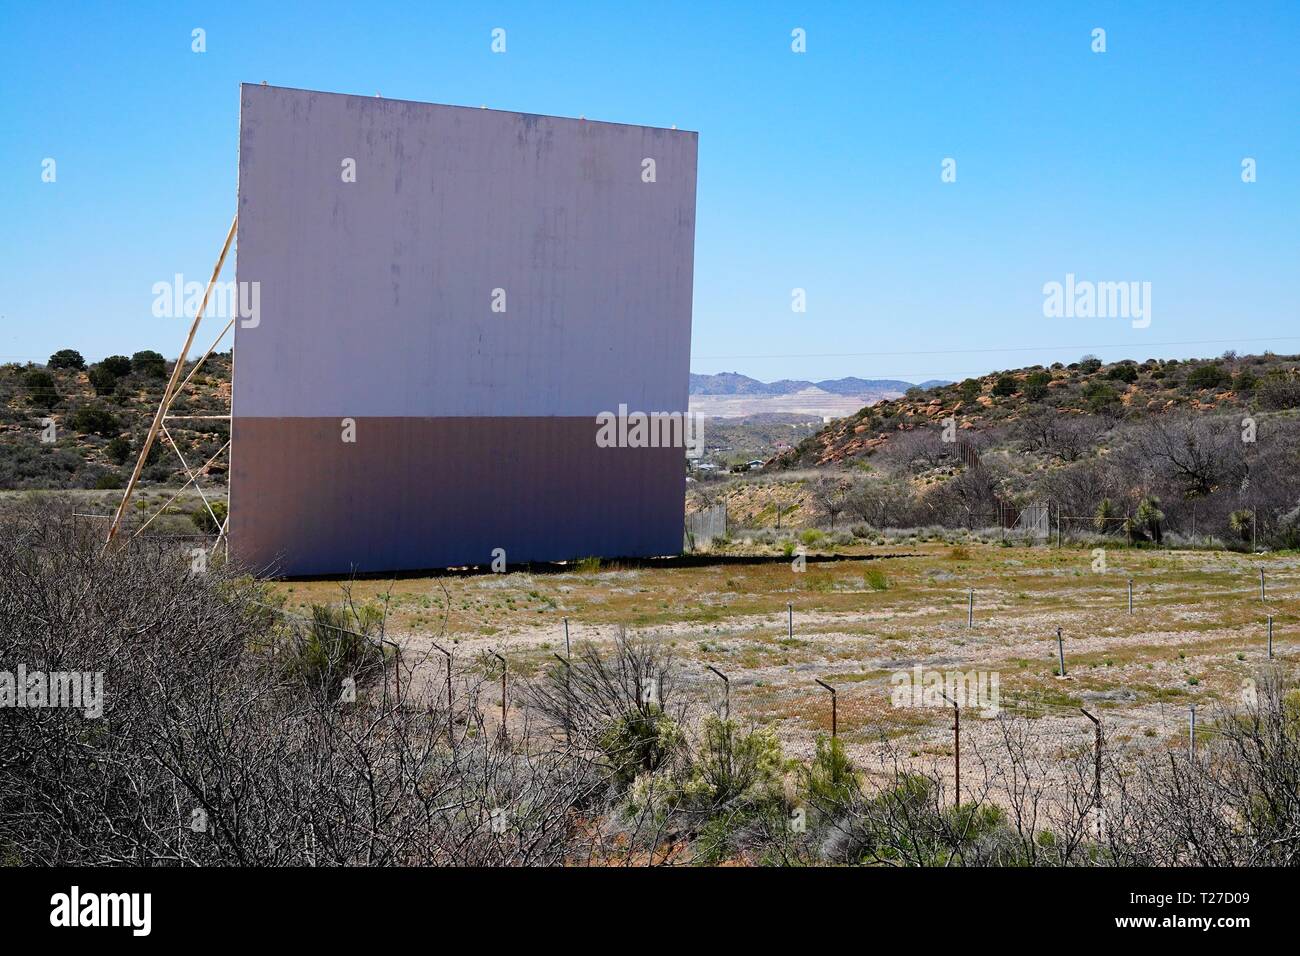 Eine verlassene Drive in Movie Theater außerhalb der Kugel, Arizona. Stockfoto